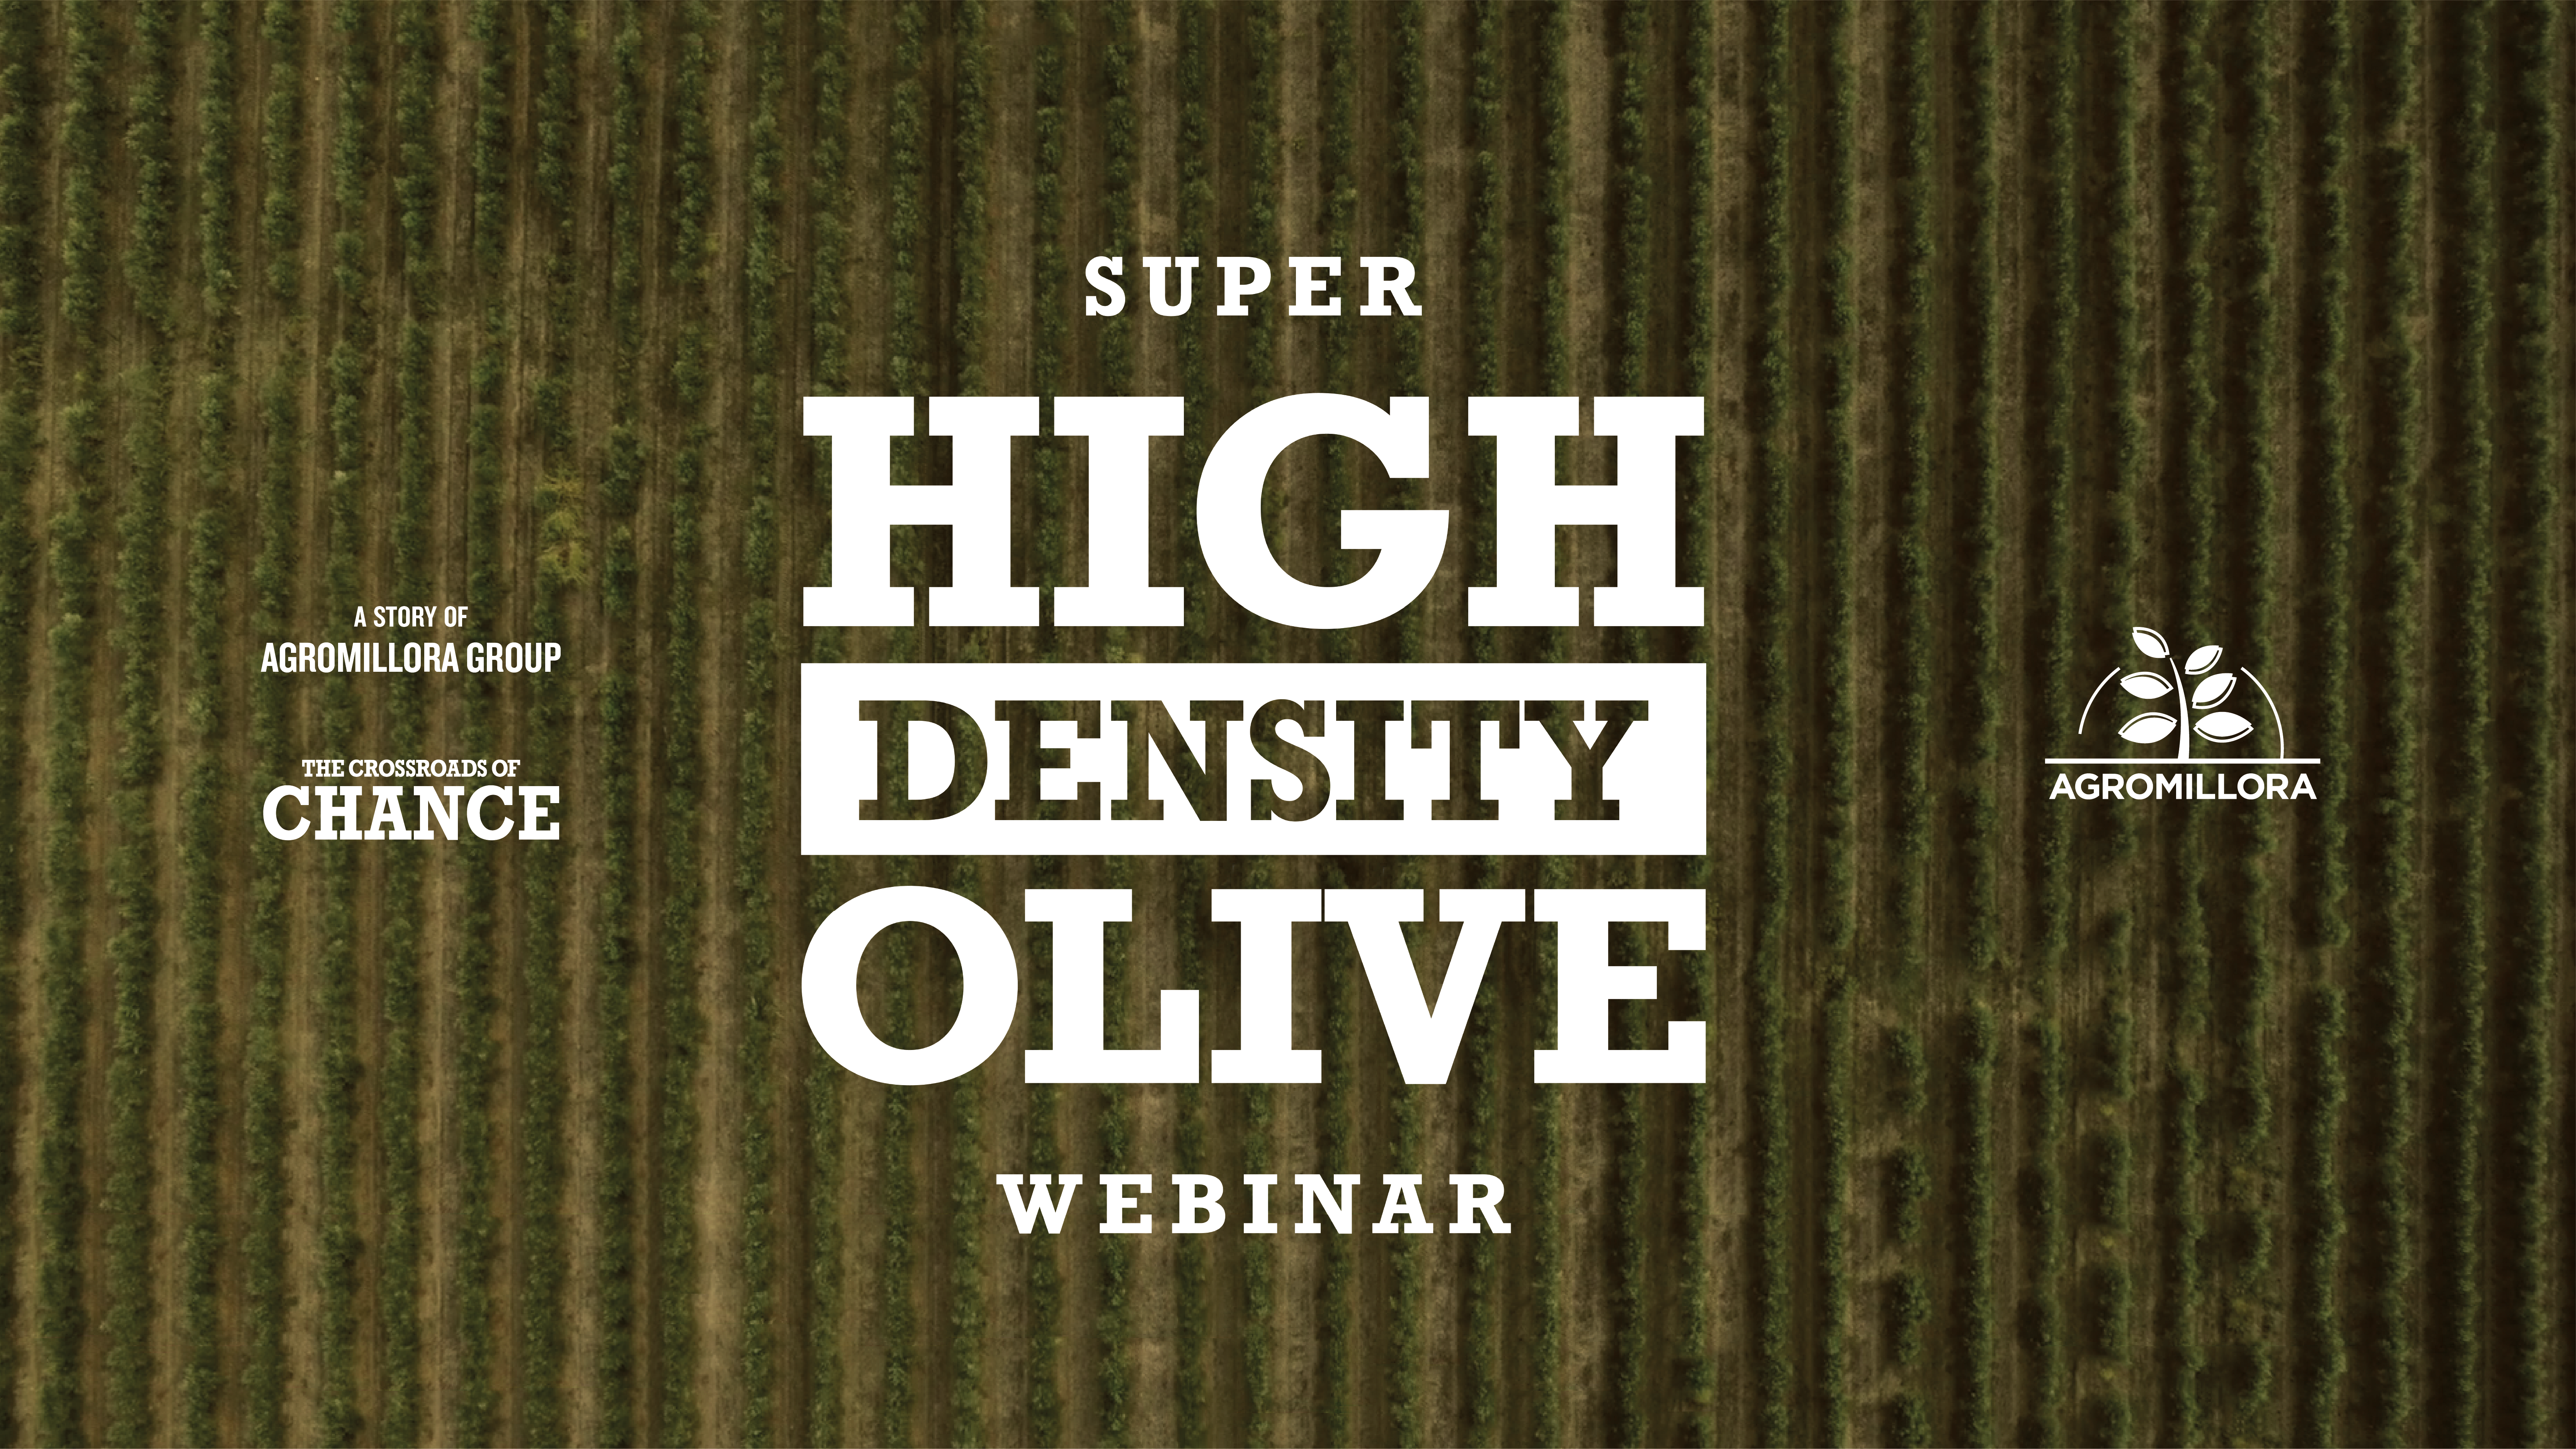 Super High Density Olive Webinar